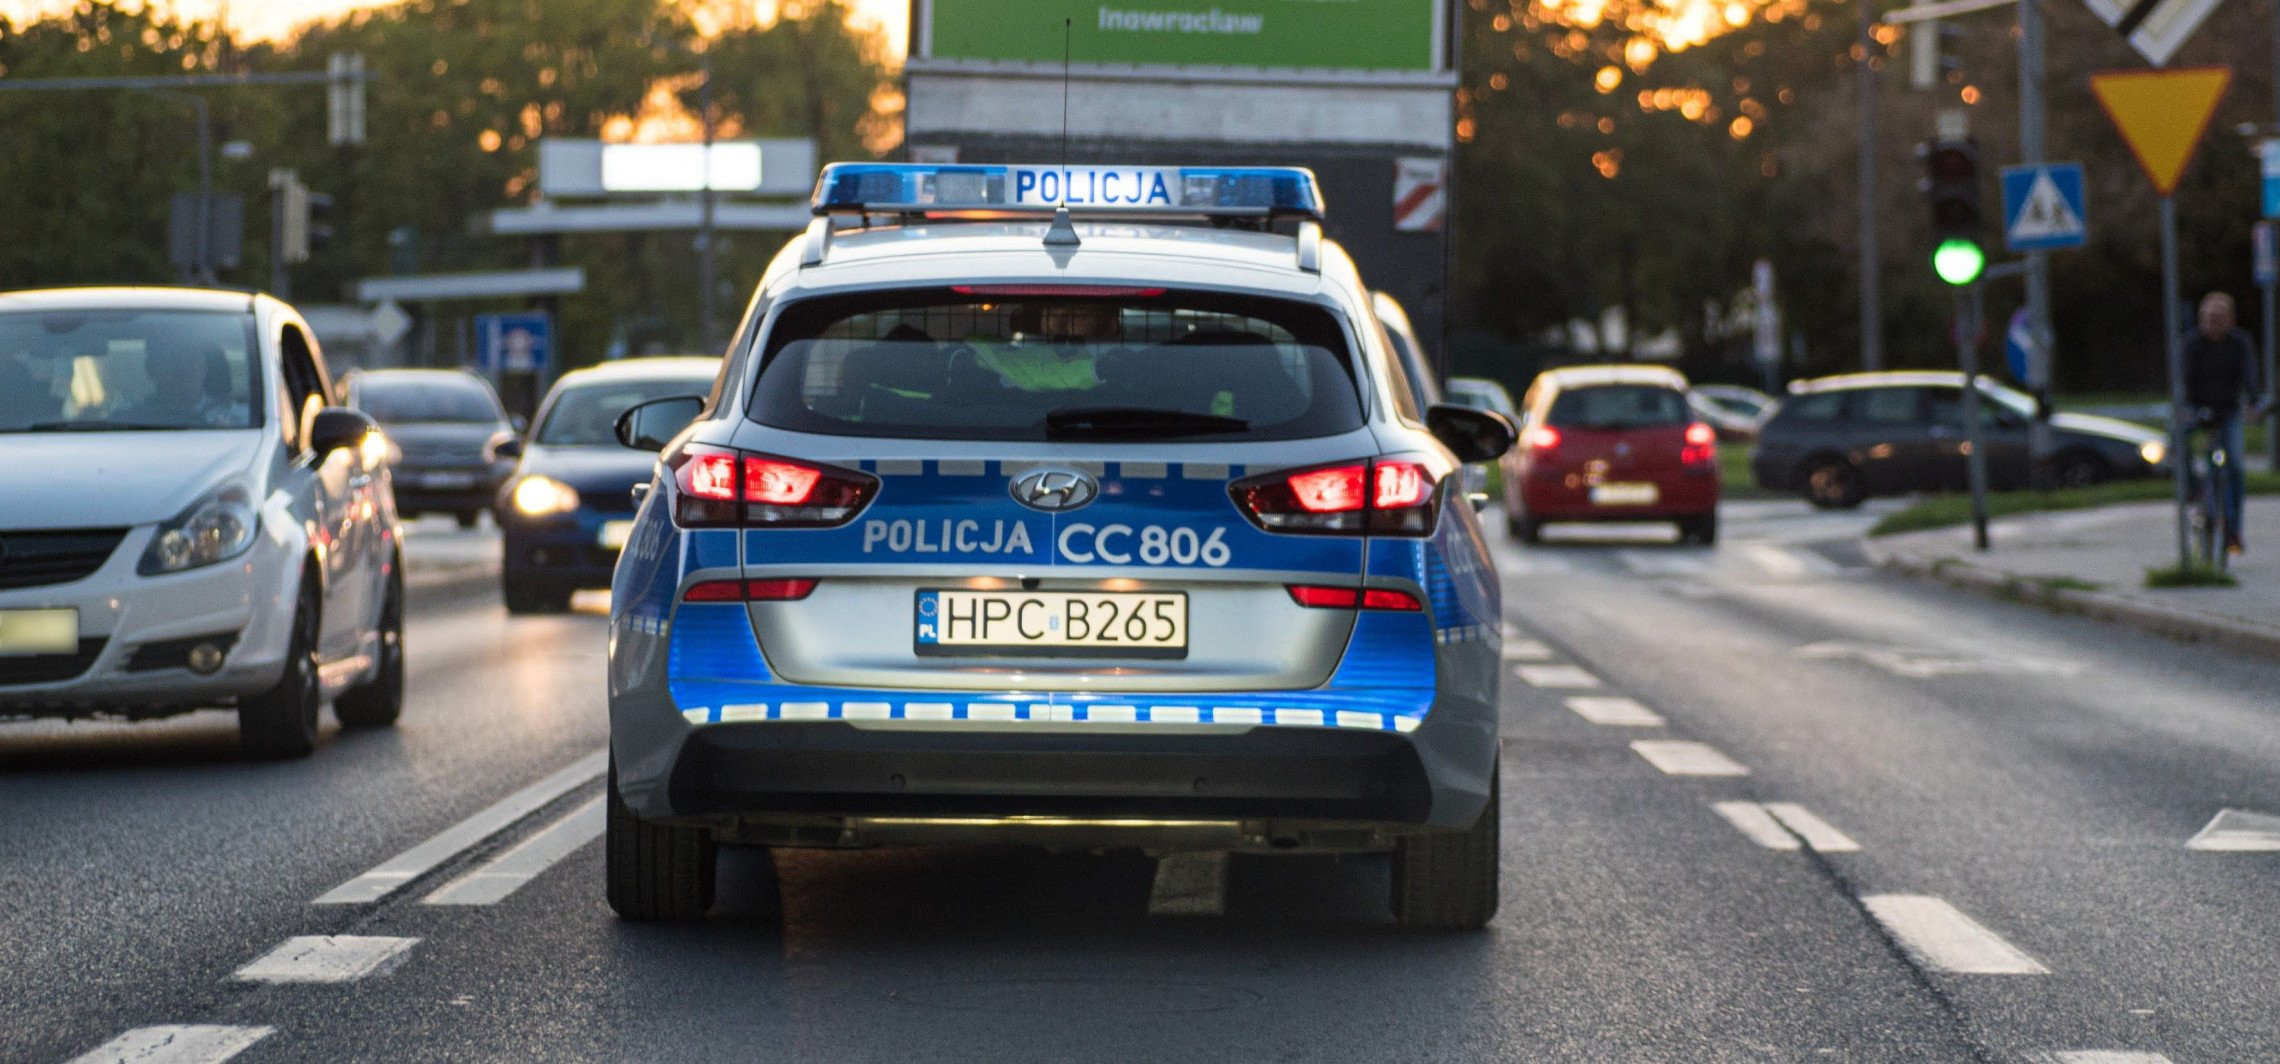 Inowrocław - Policja zatrzymuje prawa jazdy za prędkość